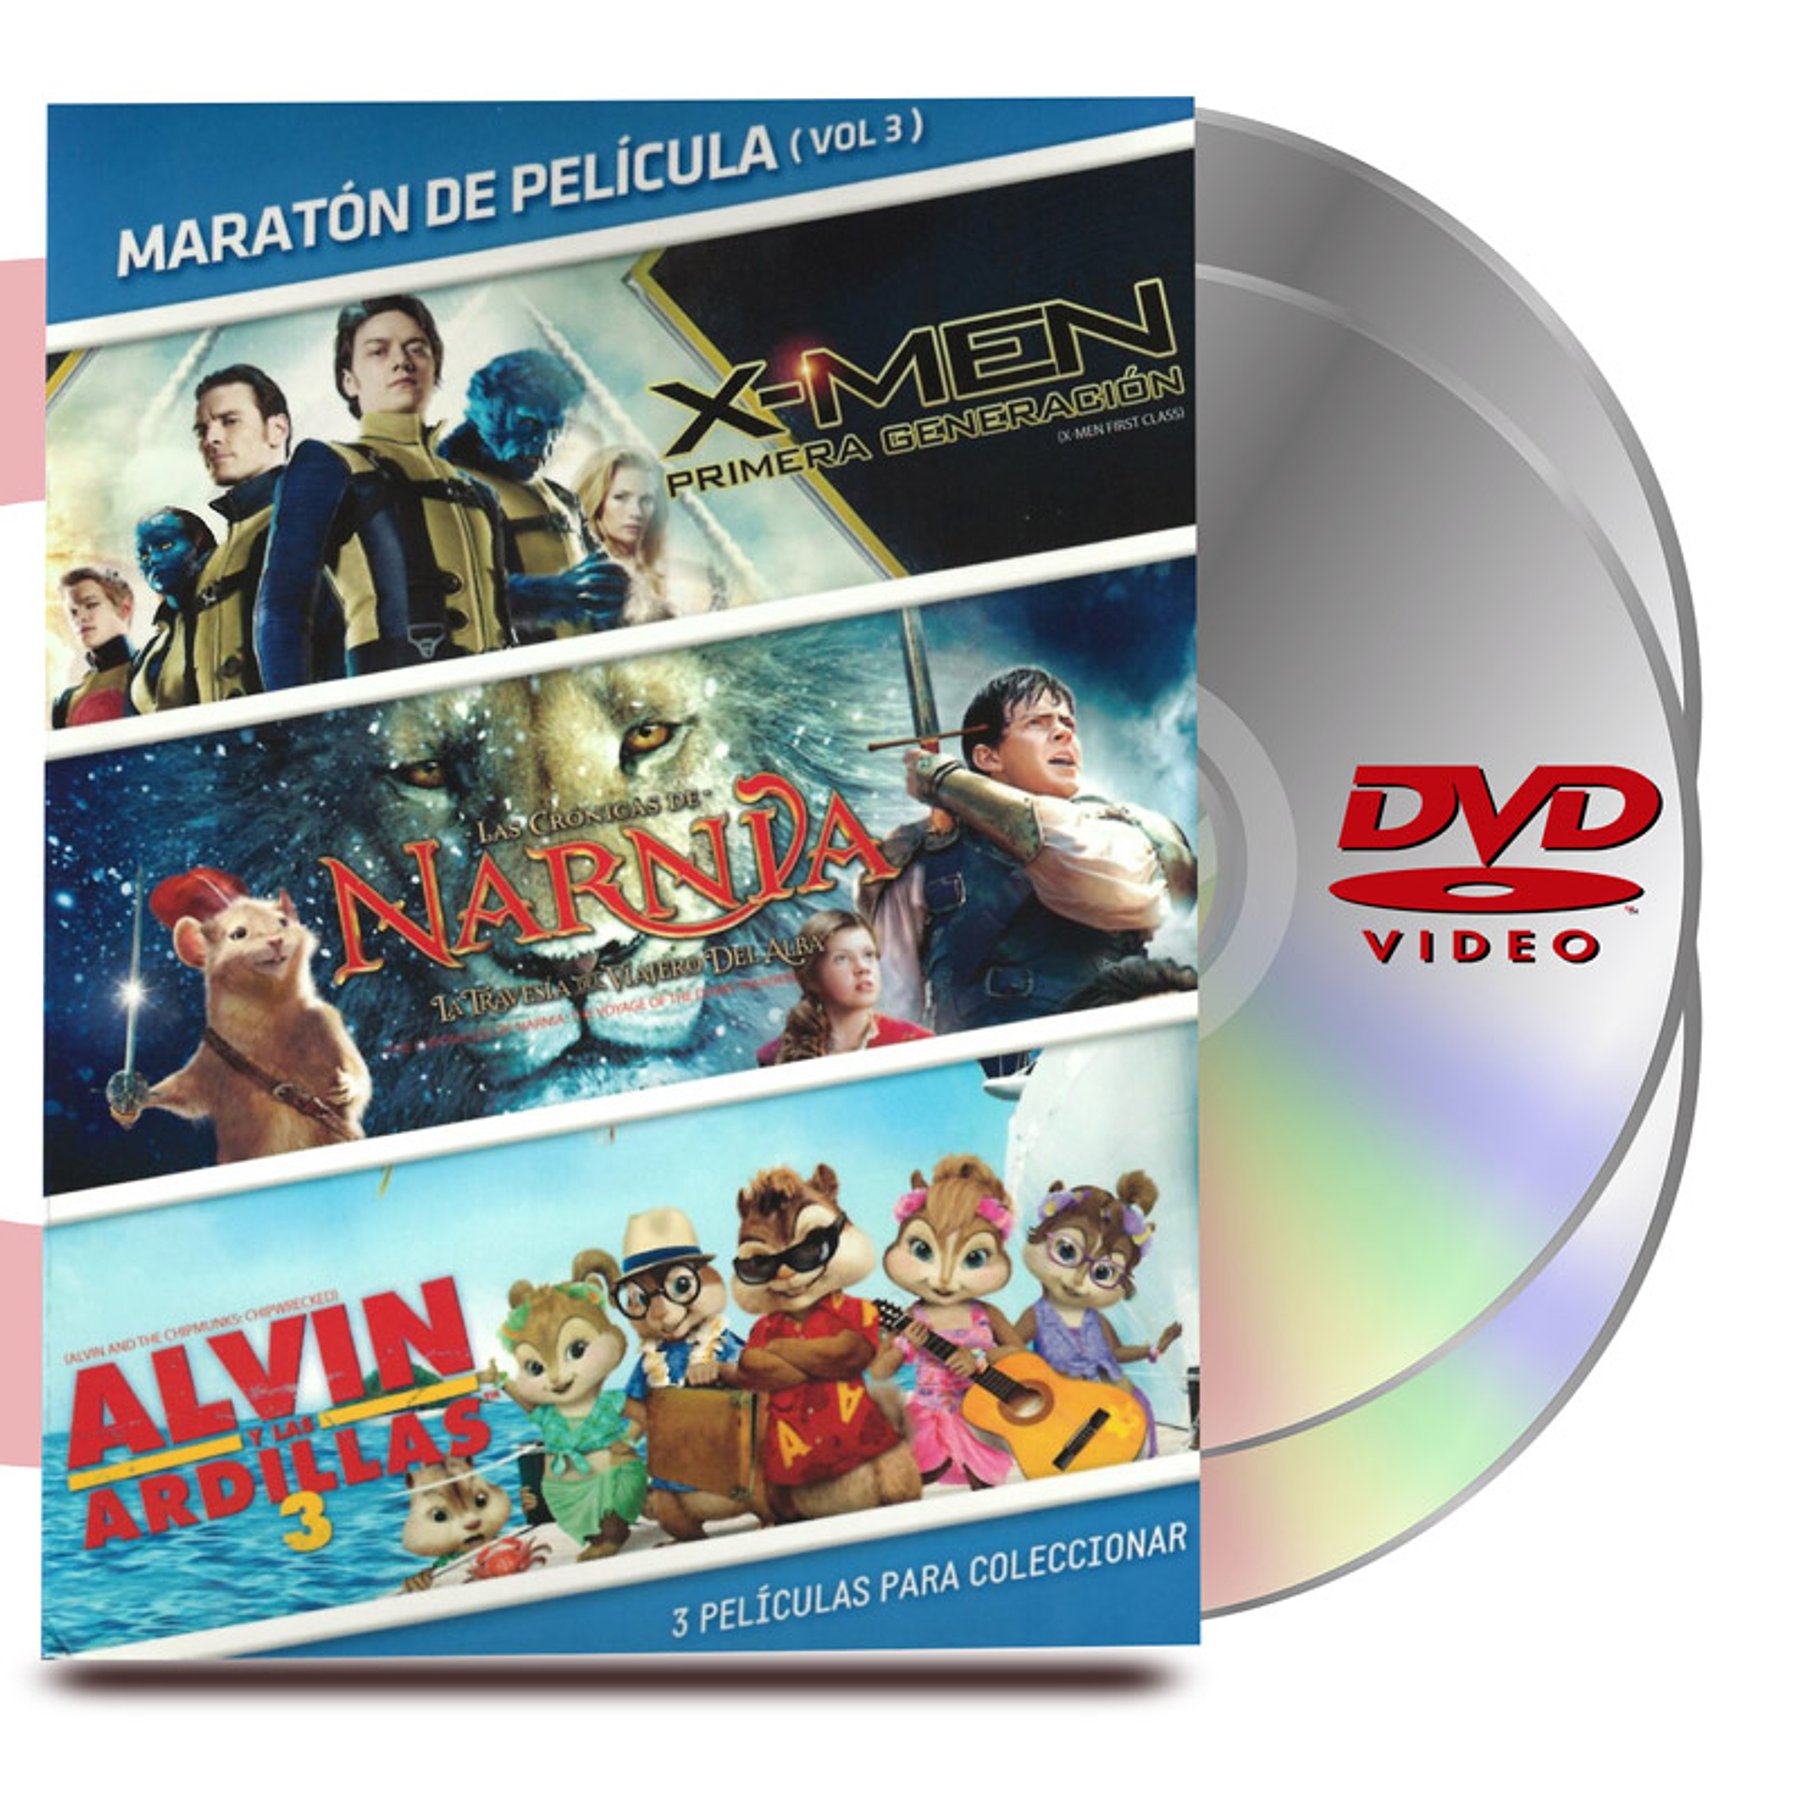 PACK DVD MARATÓN VOL :3 X-MEN 1ERA GENERACIÓN / NARNIA / ALVIN